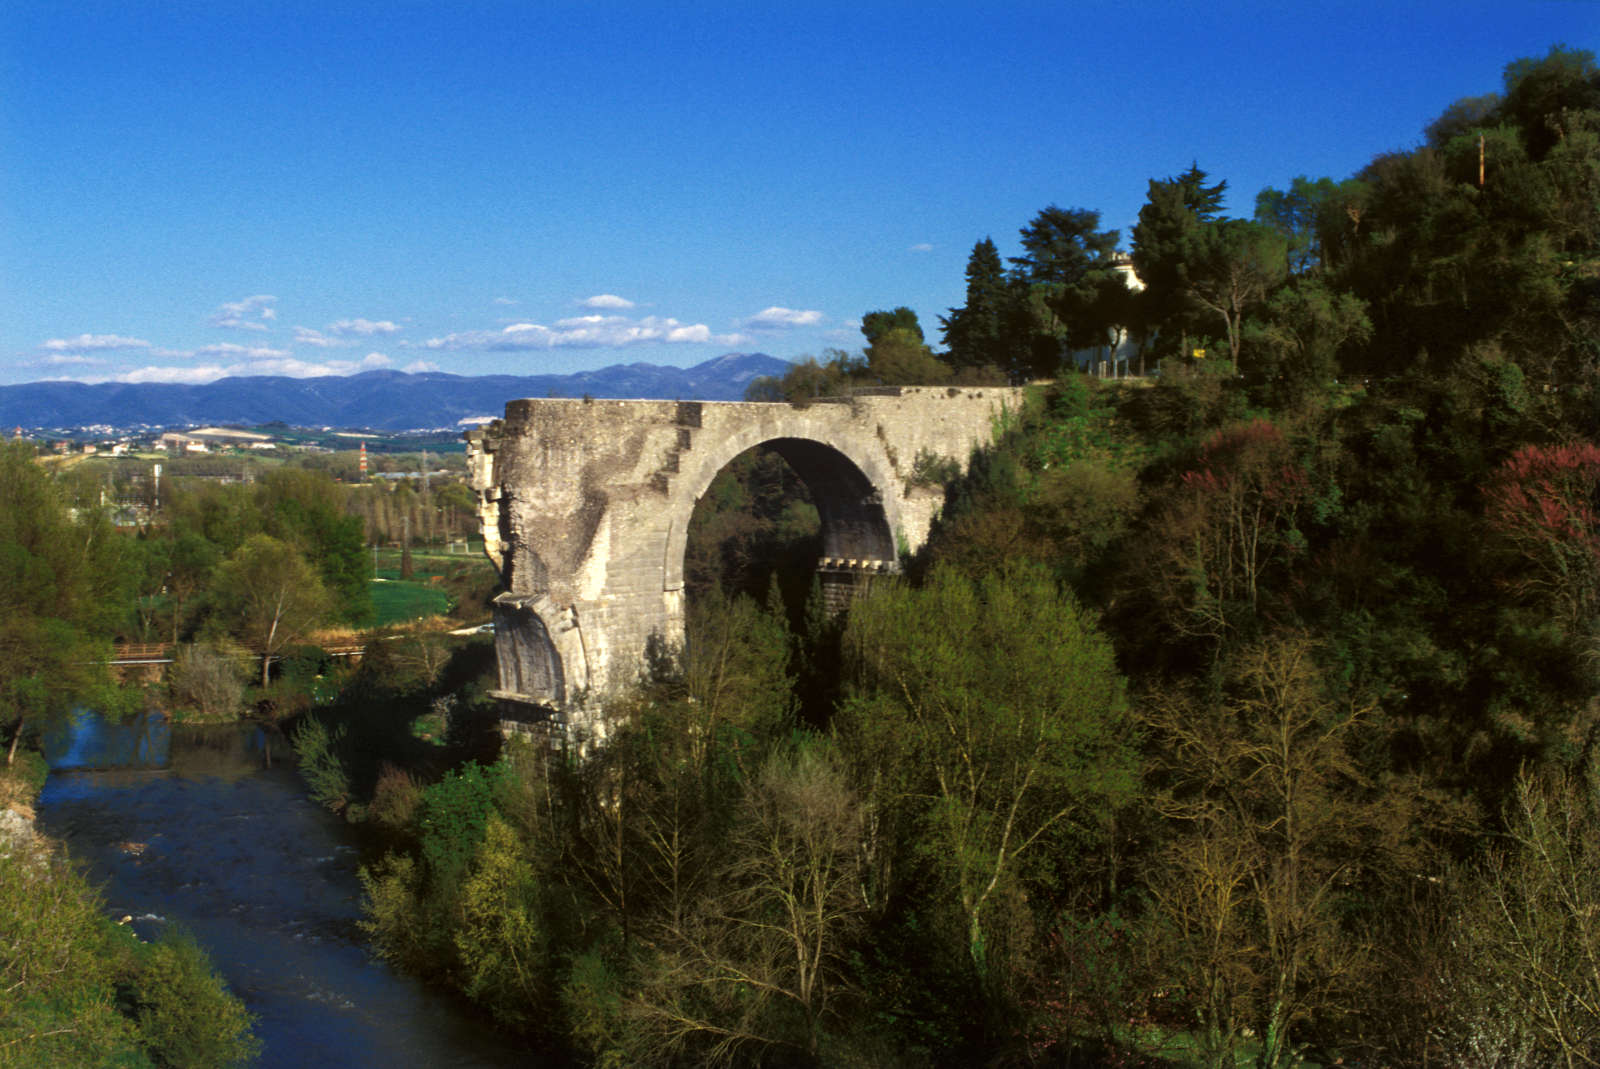 Cardona Bridge and Augustus Bridge in Narni